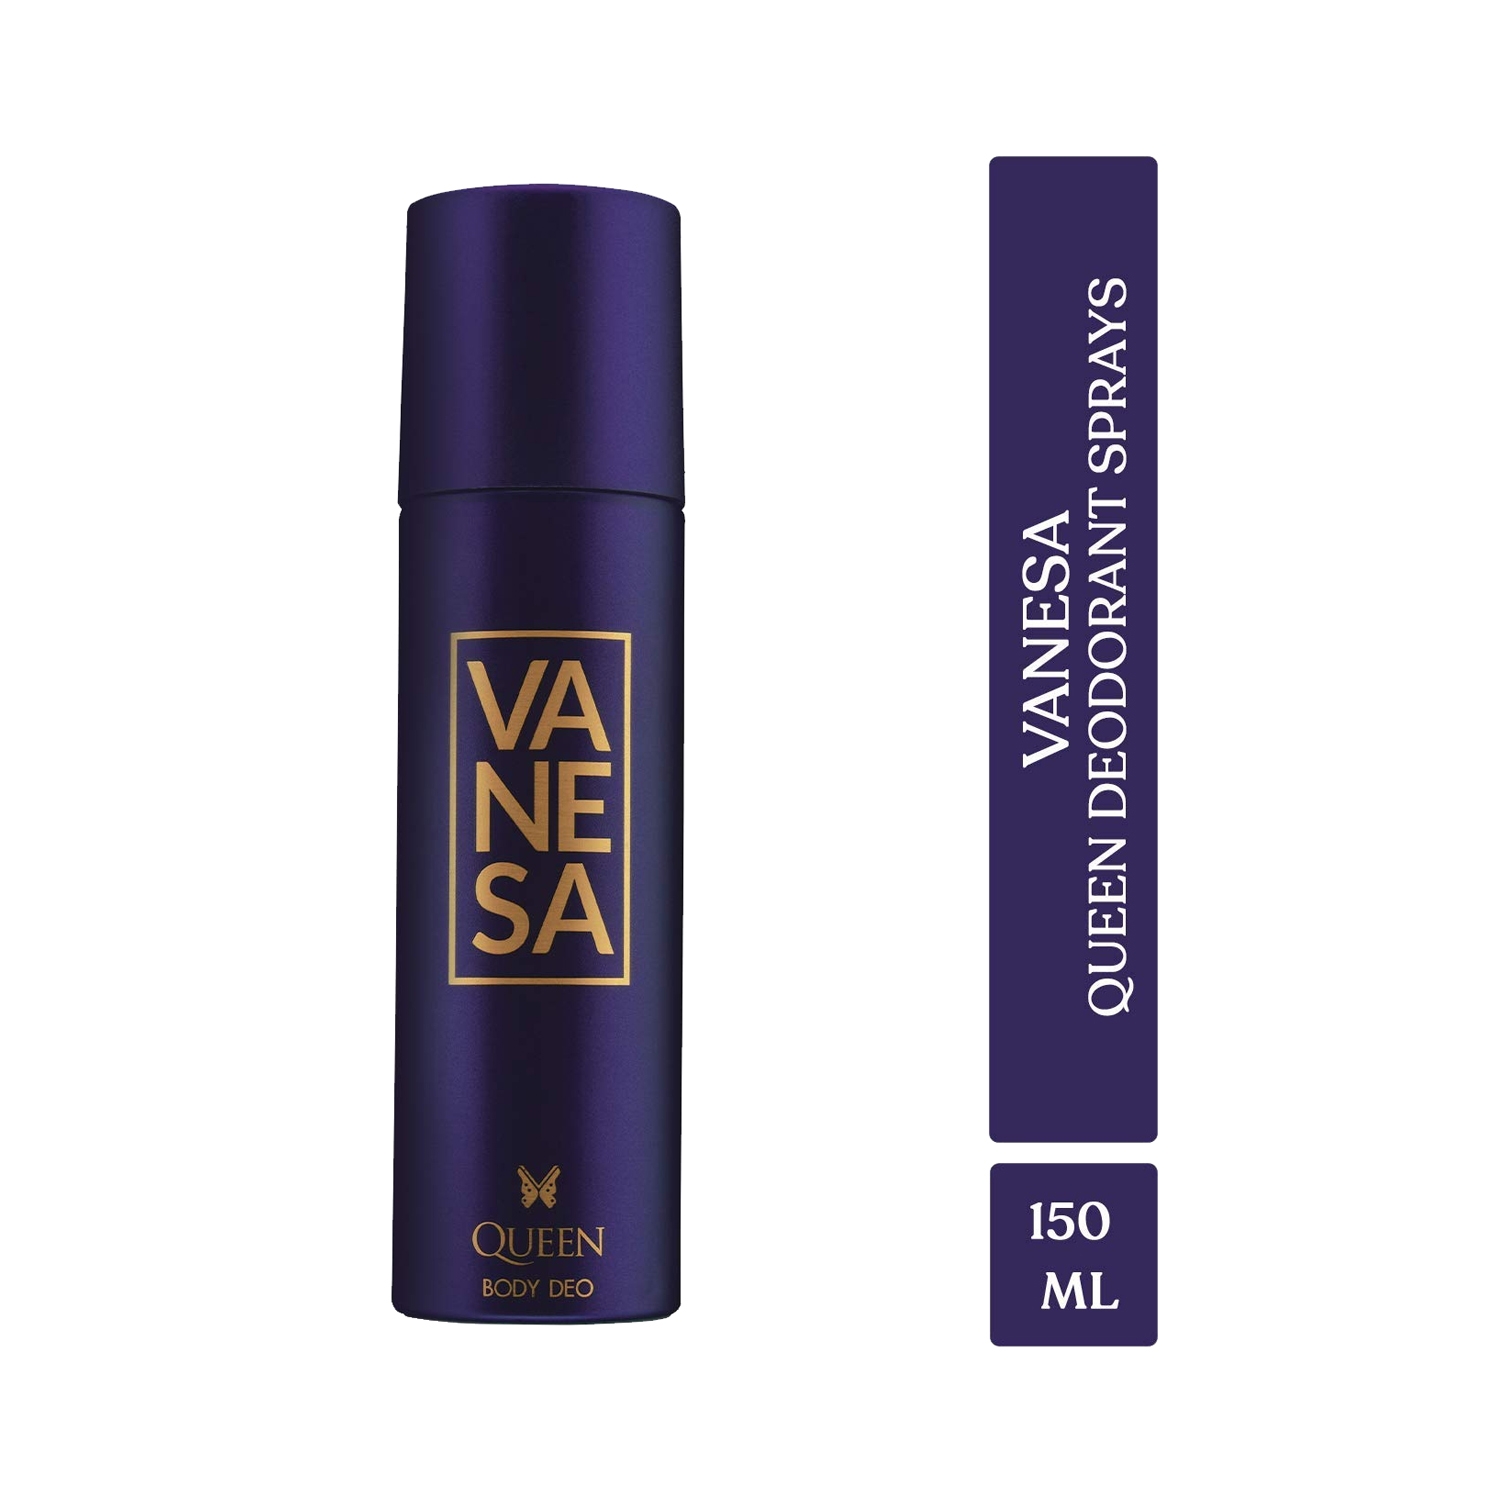 Vanesa Queen Deodorant Body Spray (150ml)